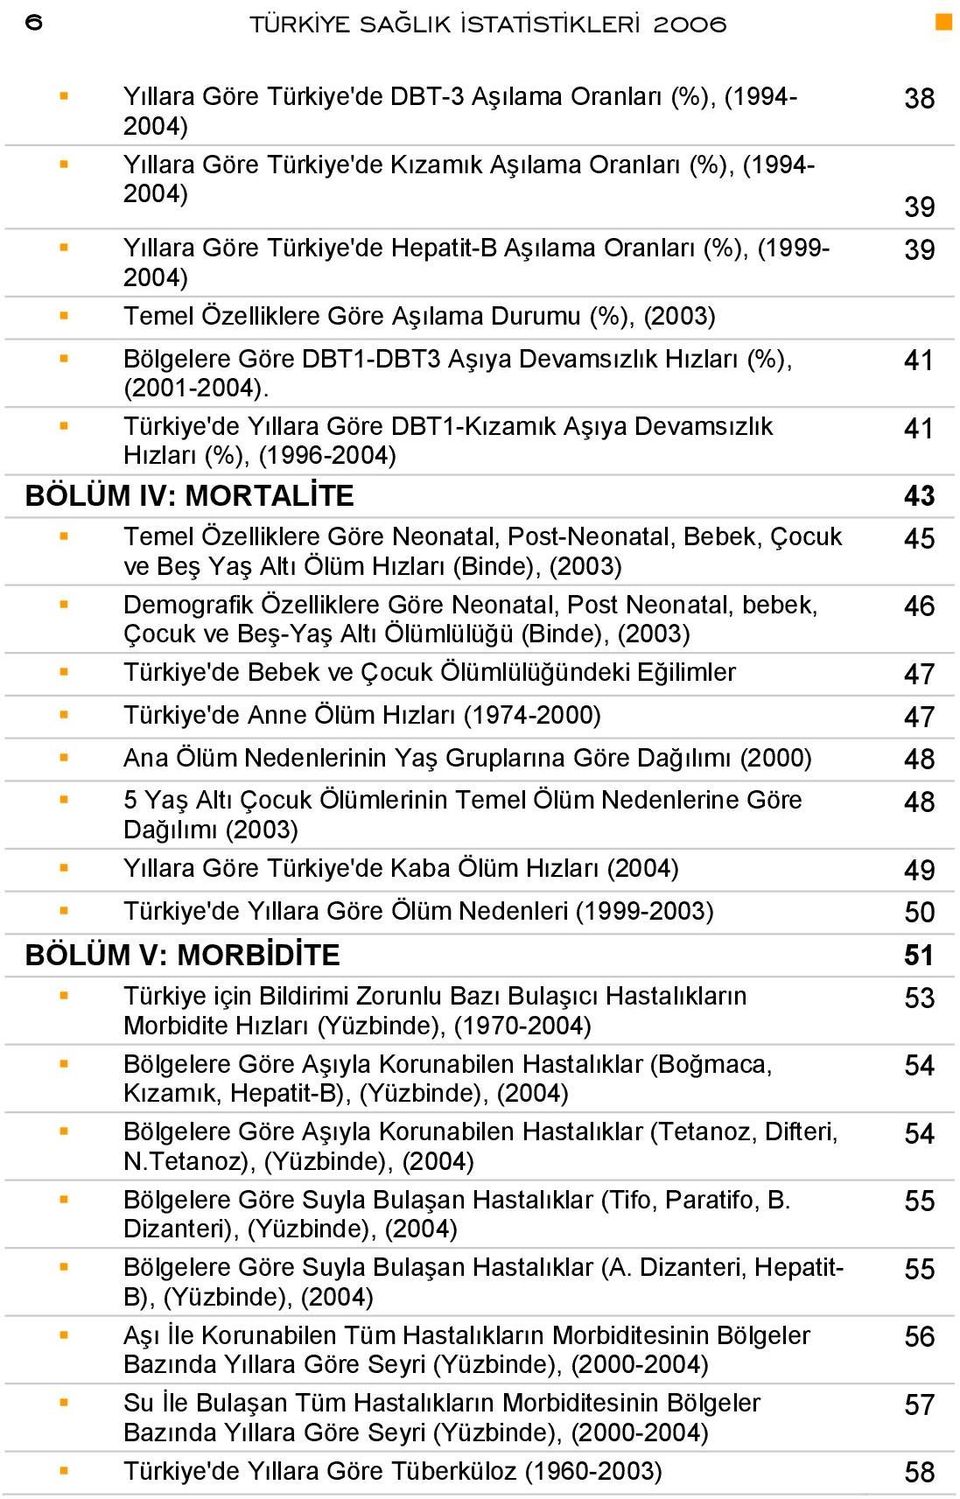 Türkiye'de Yıllara Göre DBT1-Kızamık Aşıya Devamsızlık Hızları (%), (1996-2004) BÖLÜM IV: MORTALİTE 43 Temel Özelliklere Göre Neonatal, Post-Neonatal, Bebek, Çocuk ve Beş Yaş Altı Ölüm Hızları